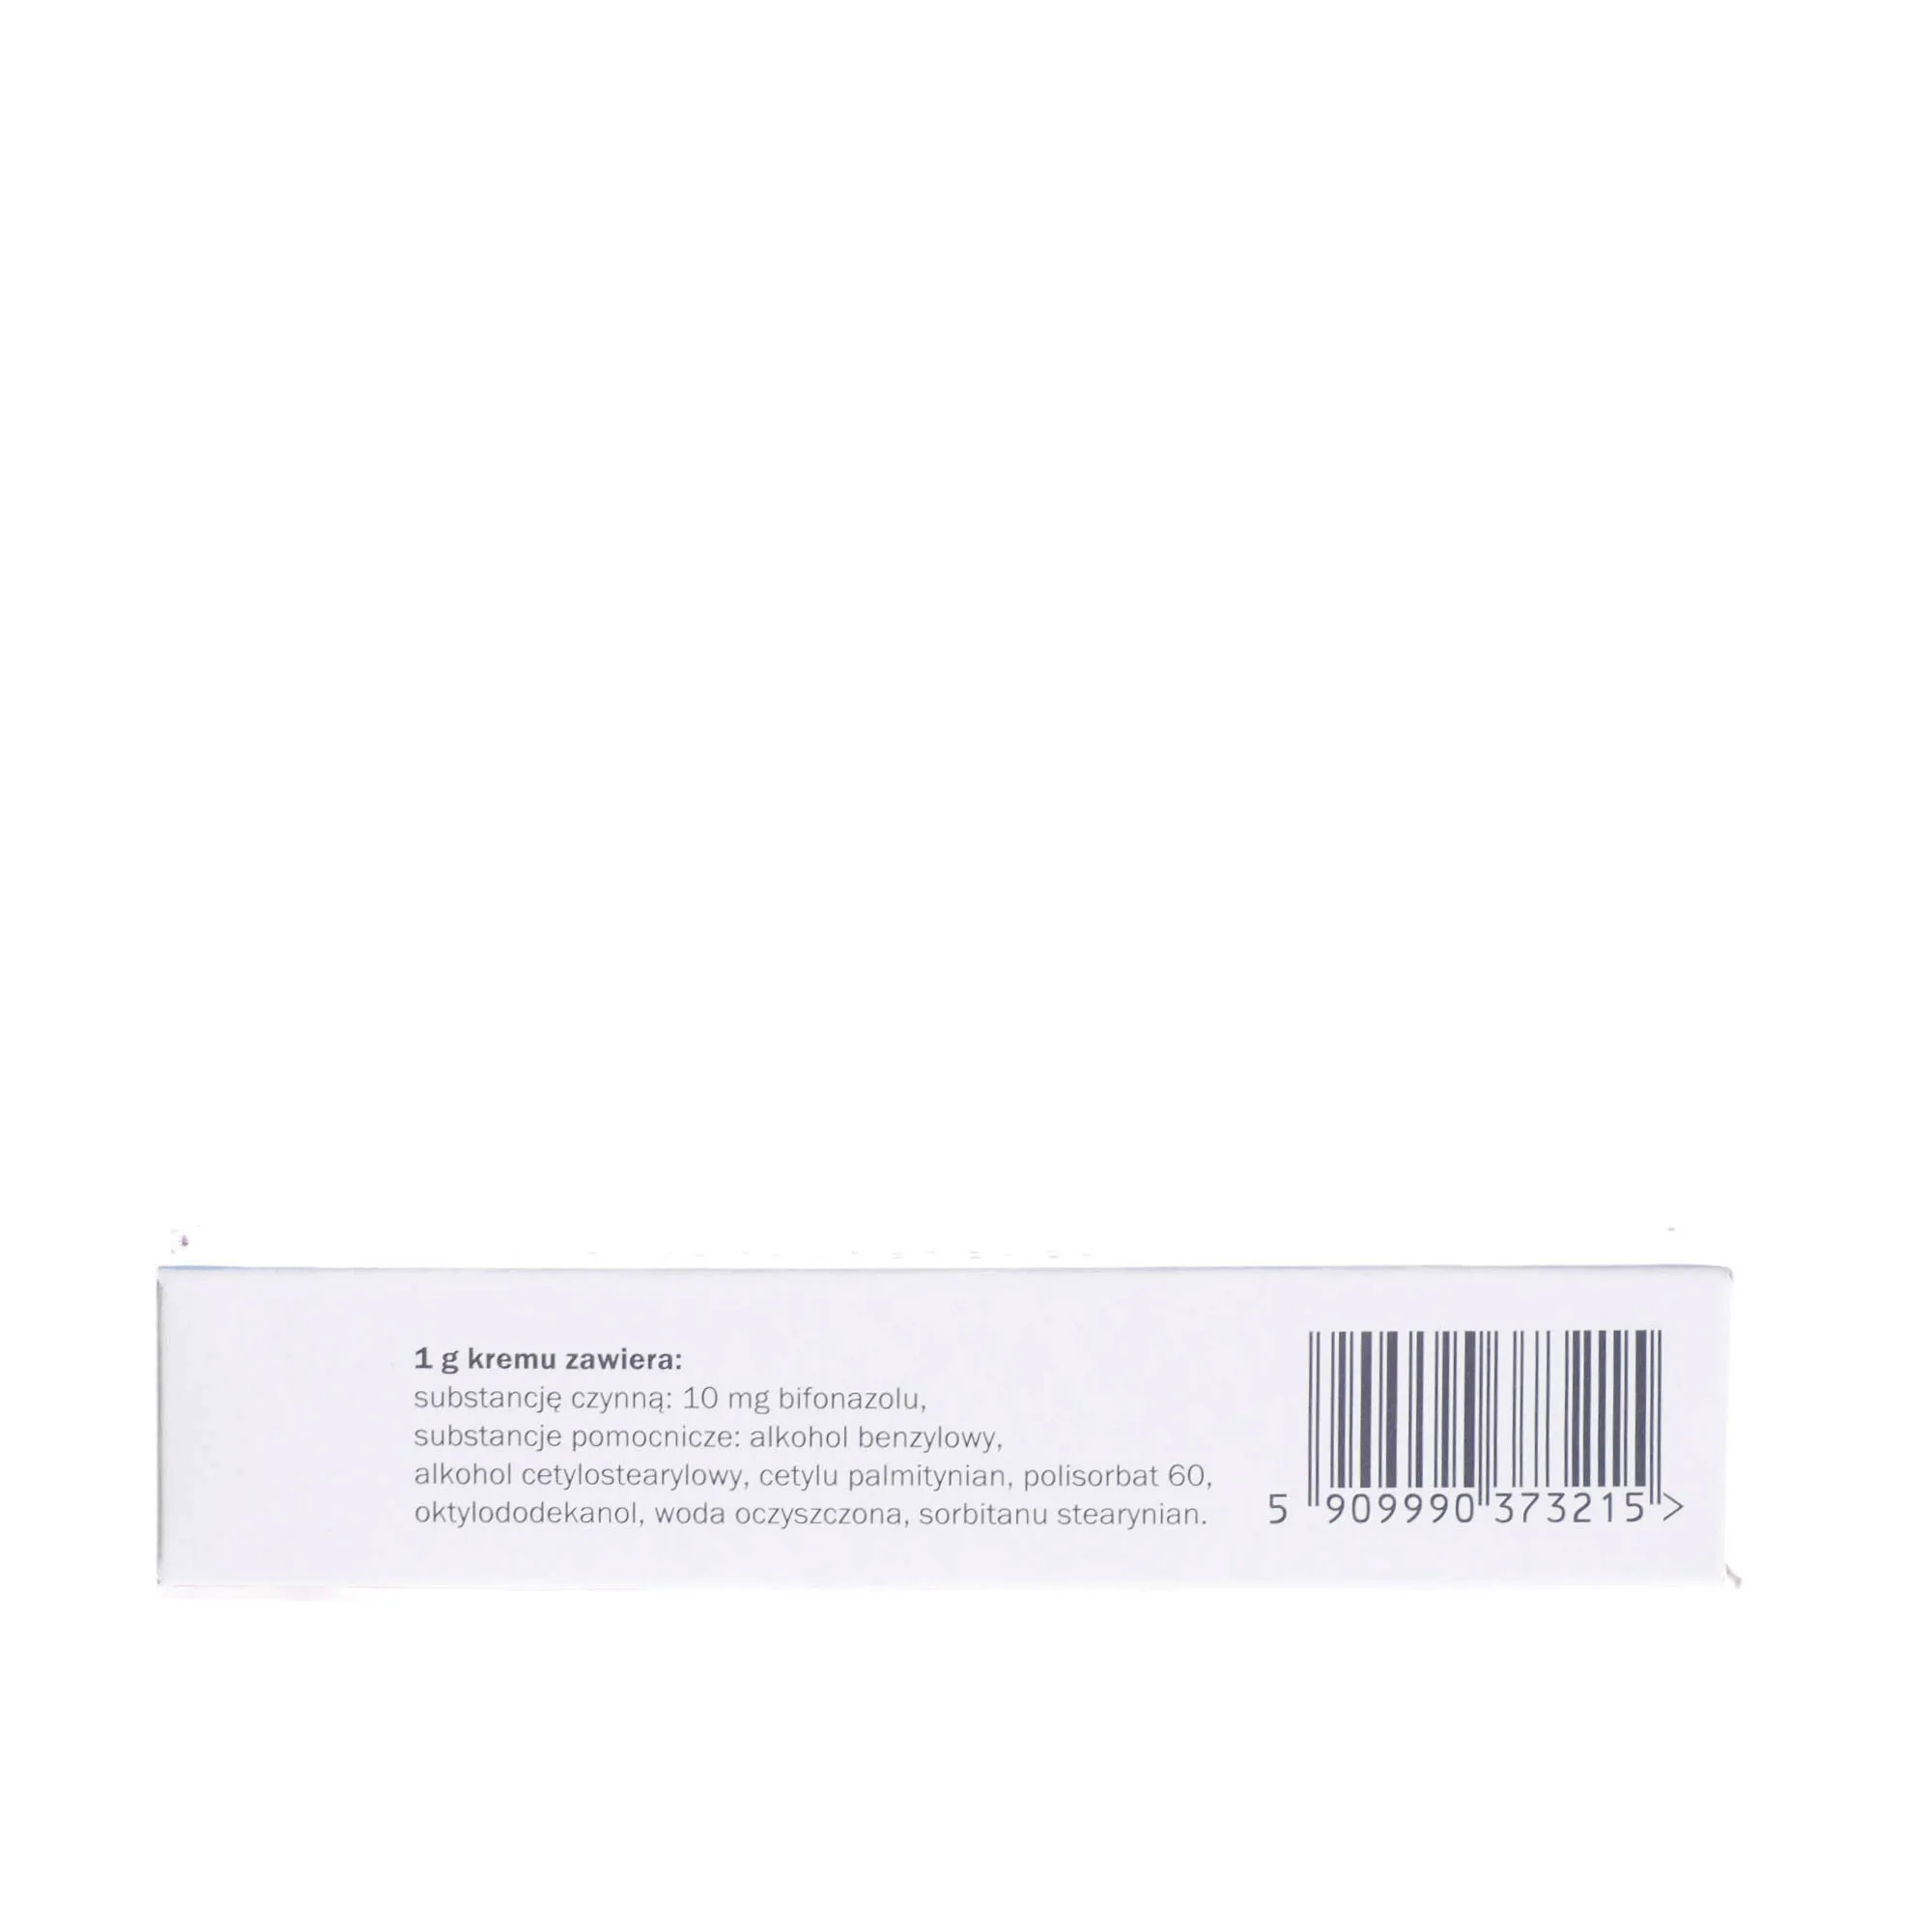 Canespor Bifonazolum 10 mg/g - krem przeciwgrzybiczny do stosowania miejscowego na skórę, 15 g 